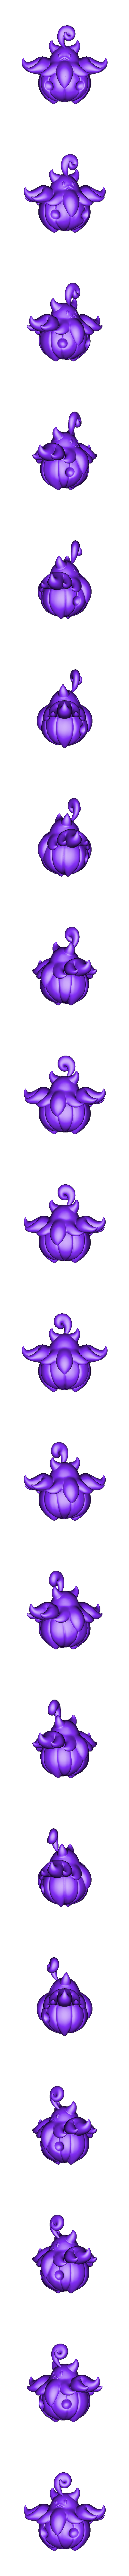 pumpkaboo_obj.OBJ Datei OBJ Pumpkaboo und Gourgeist-Pokemon・Modell für 3D-Druck zum herunterladen, ydeval